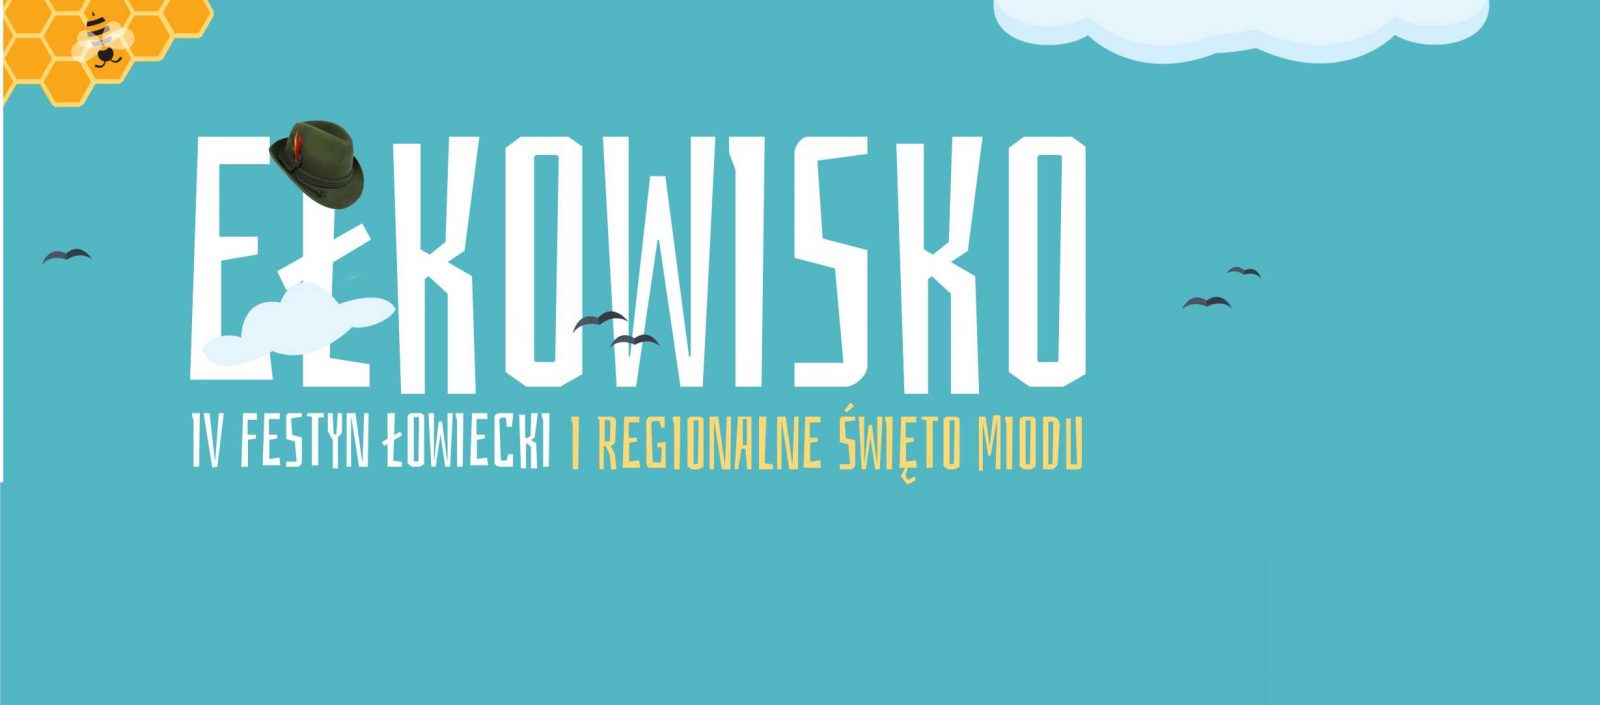 Regionalne Święto Miodu i IV Festyn Łowiecki „Ełkowisko” 15 września